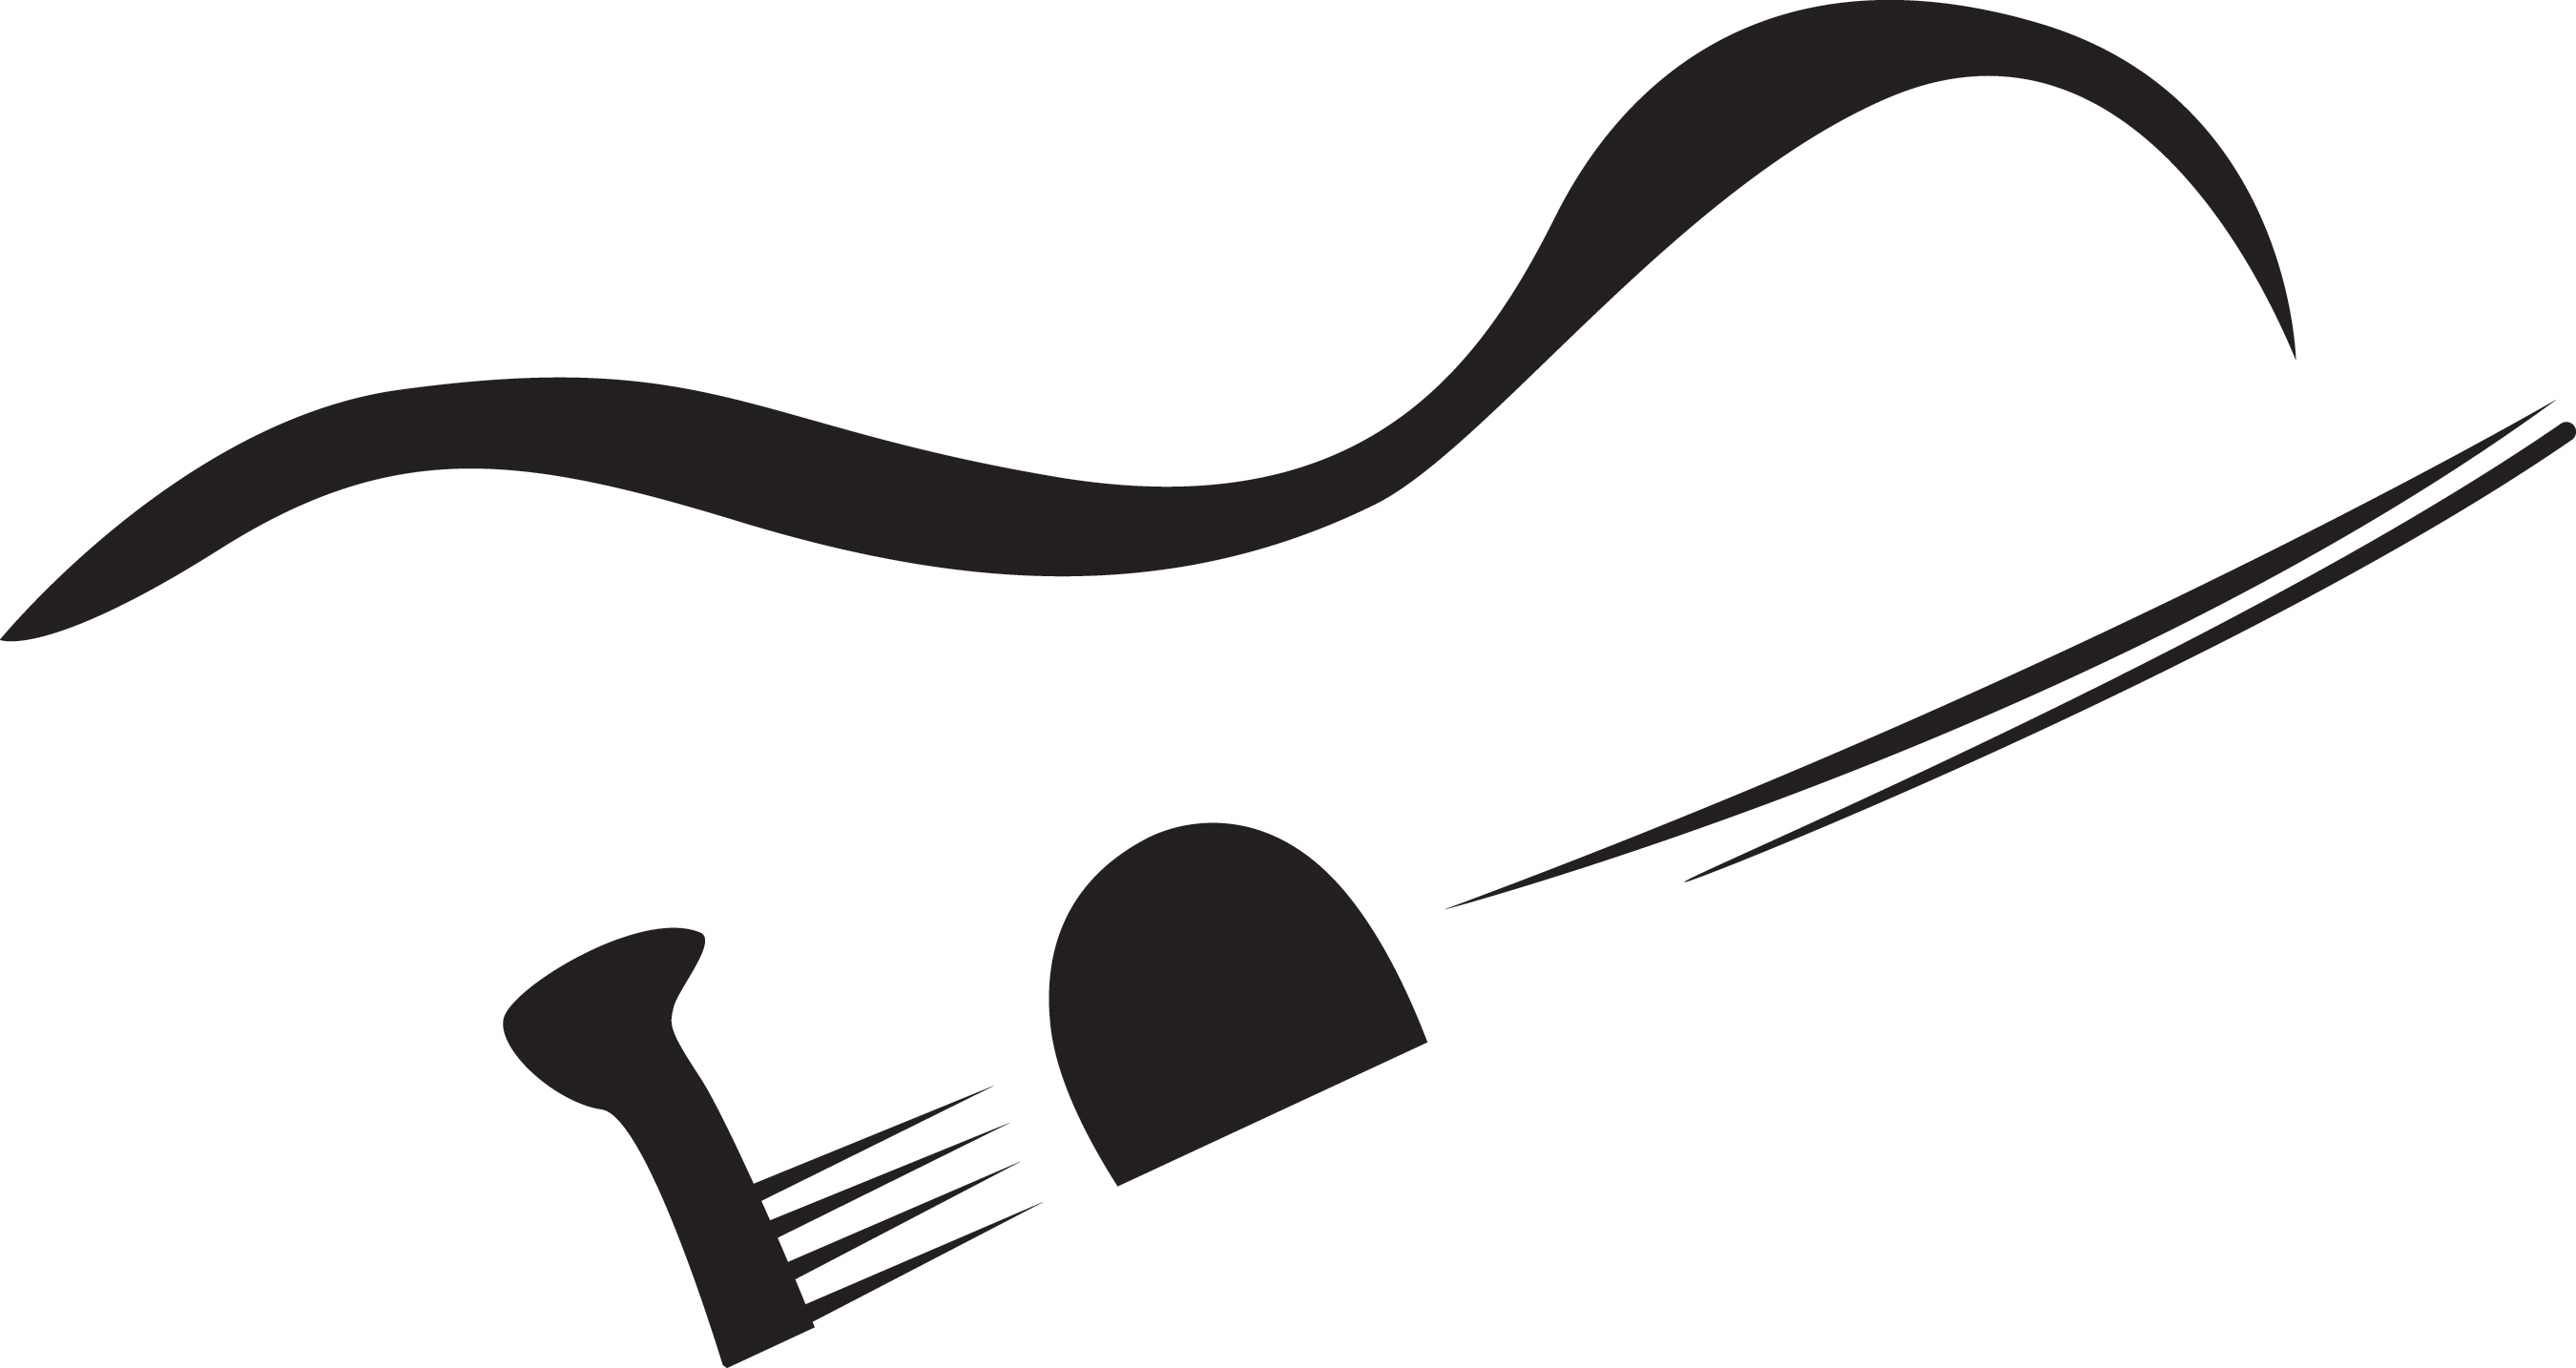 Guitar Logo